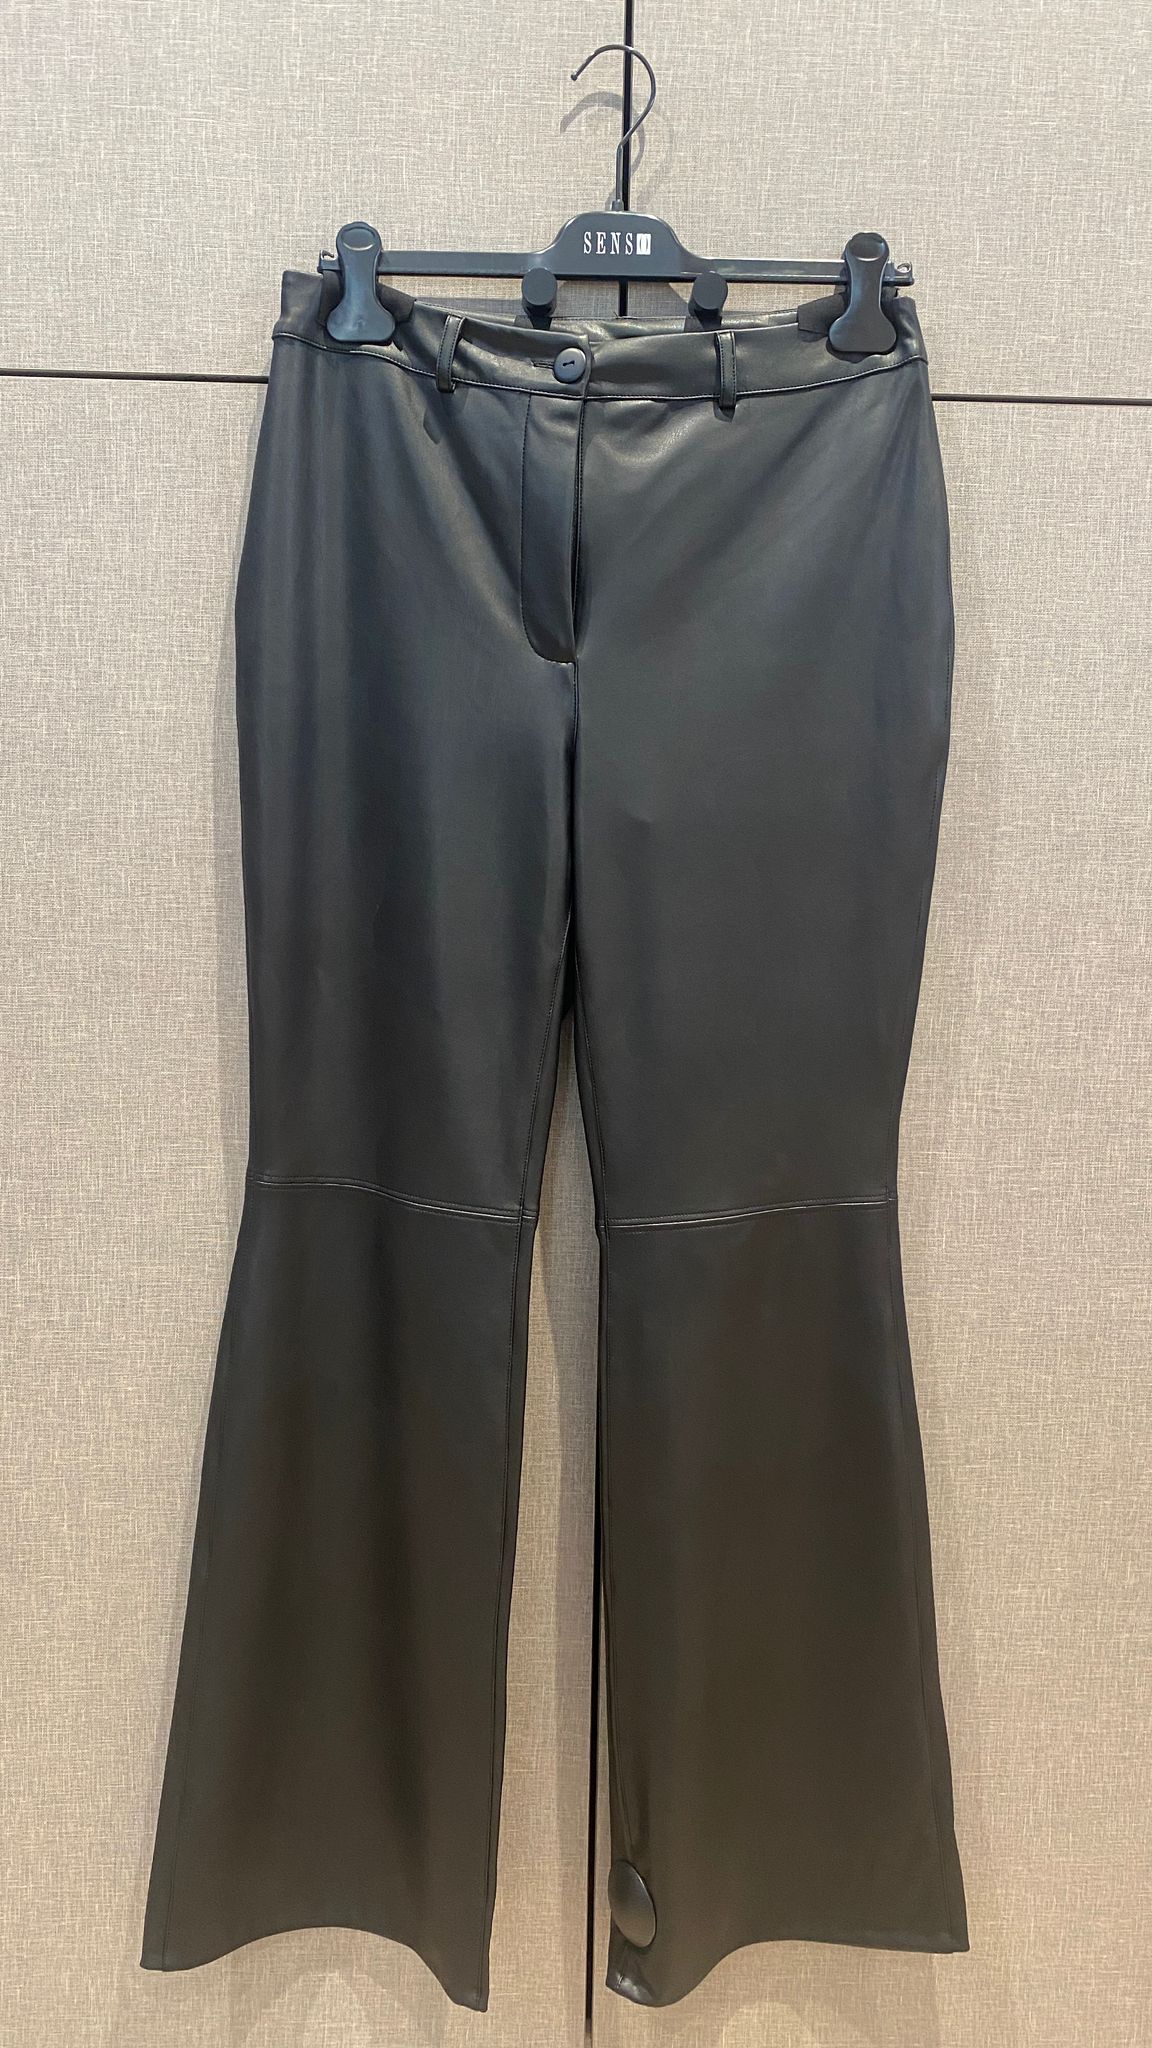 Pantalon Noir Senso (9547 Nappa Noir)